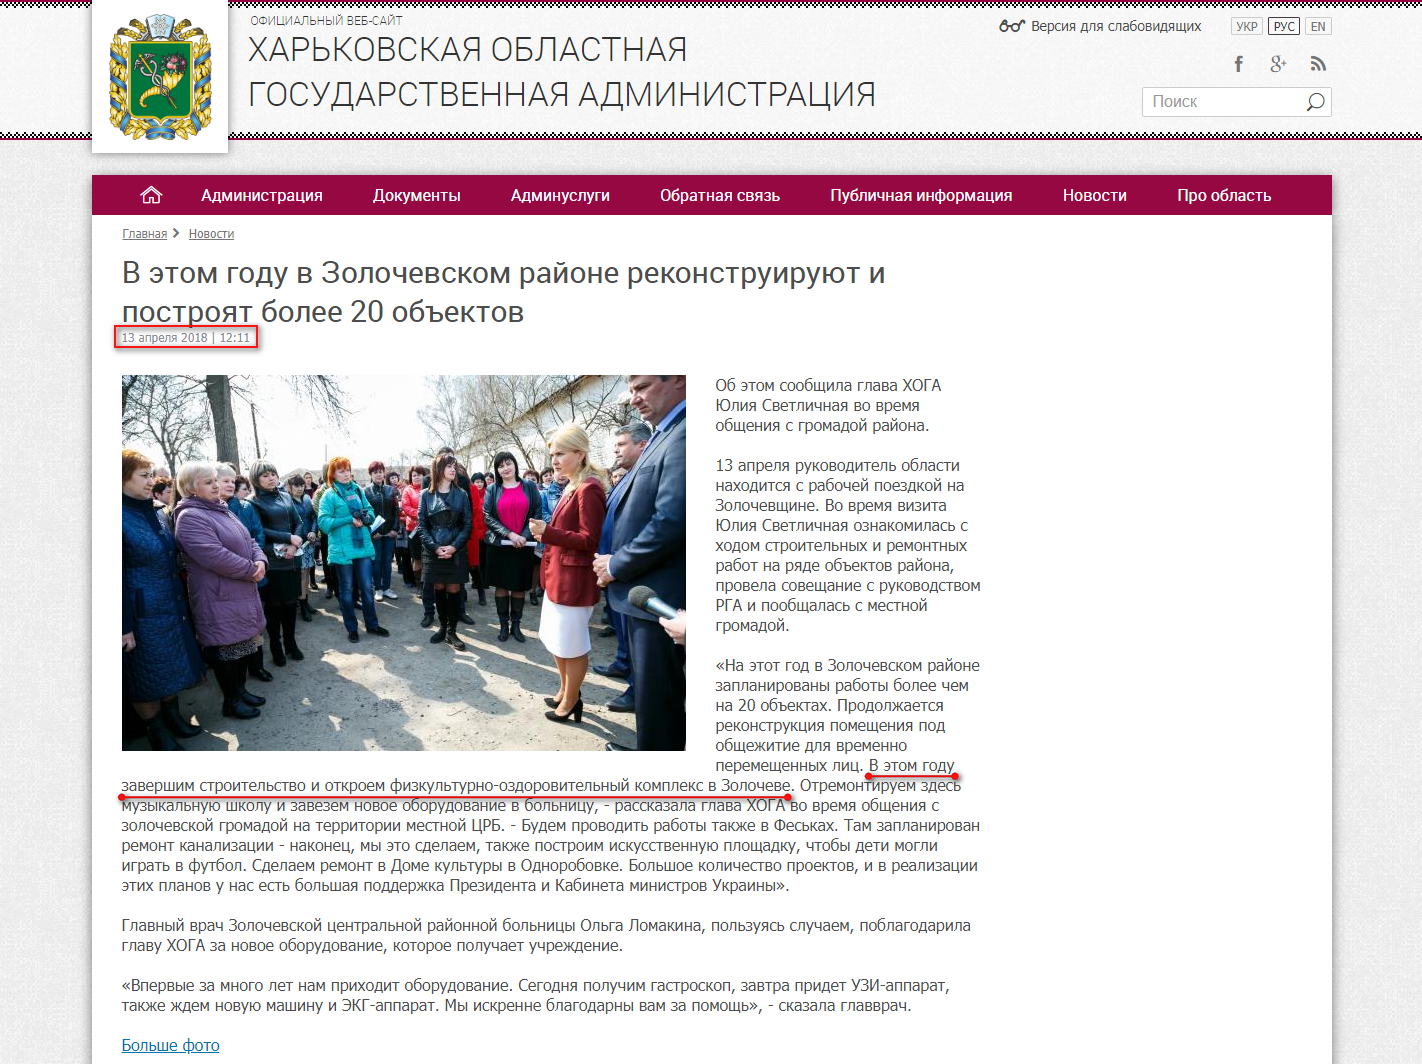 http://kharkivoda.gov.ua/ru/news/92291